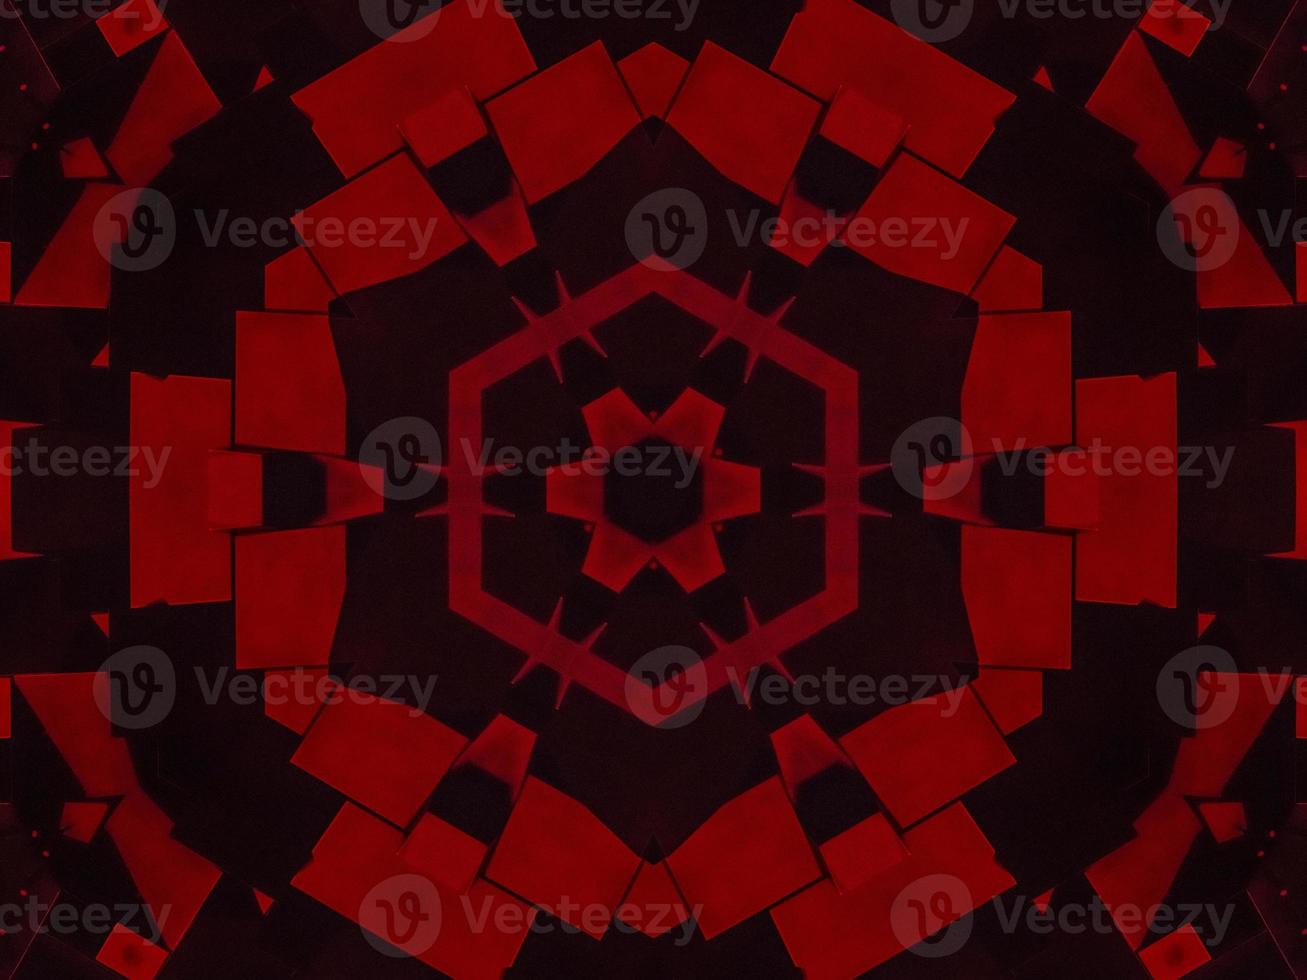 fundo de caleidoscópio metálico vermelho escuro. padrão abstrato e simétrico com vibrações horor foto